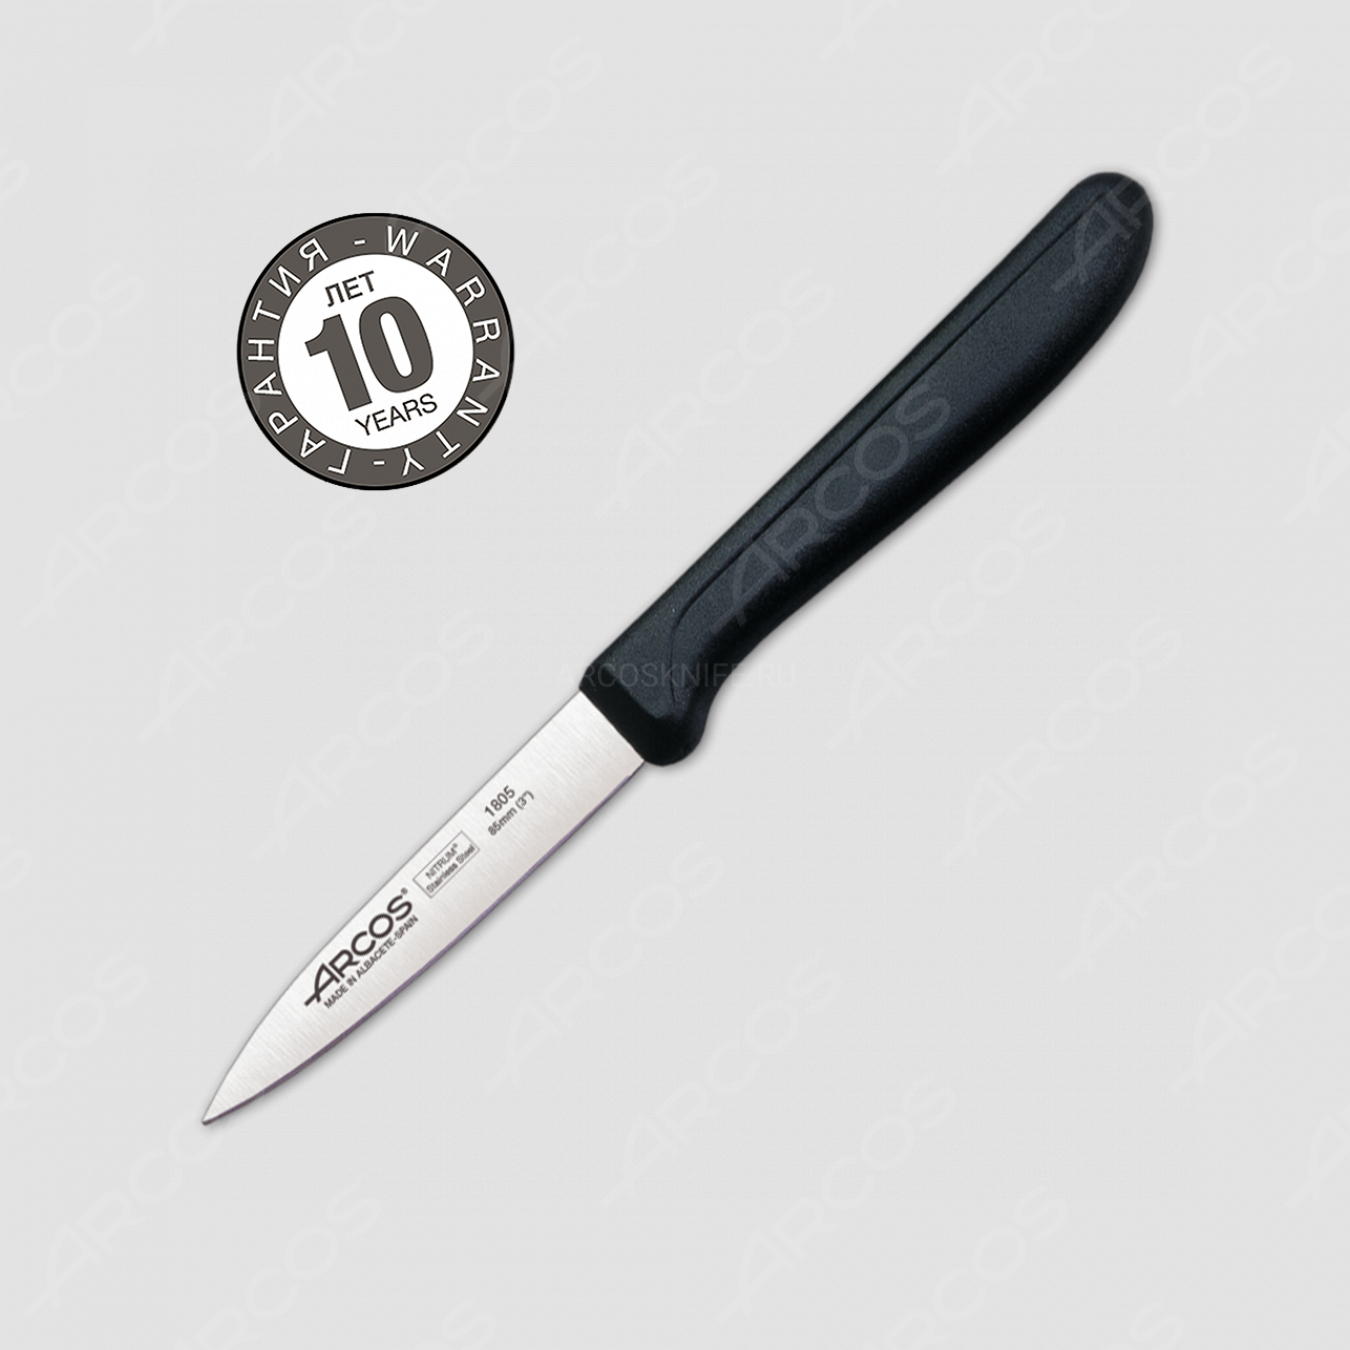 Нож кухонный для чистки 8,5 см, рукоять черная (блистр), серия Genova, ARCOS, Испания